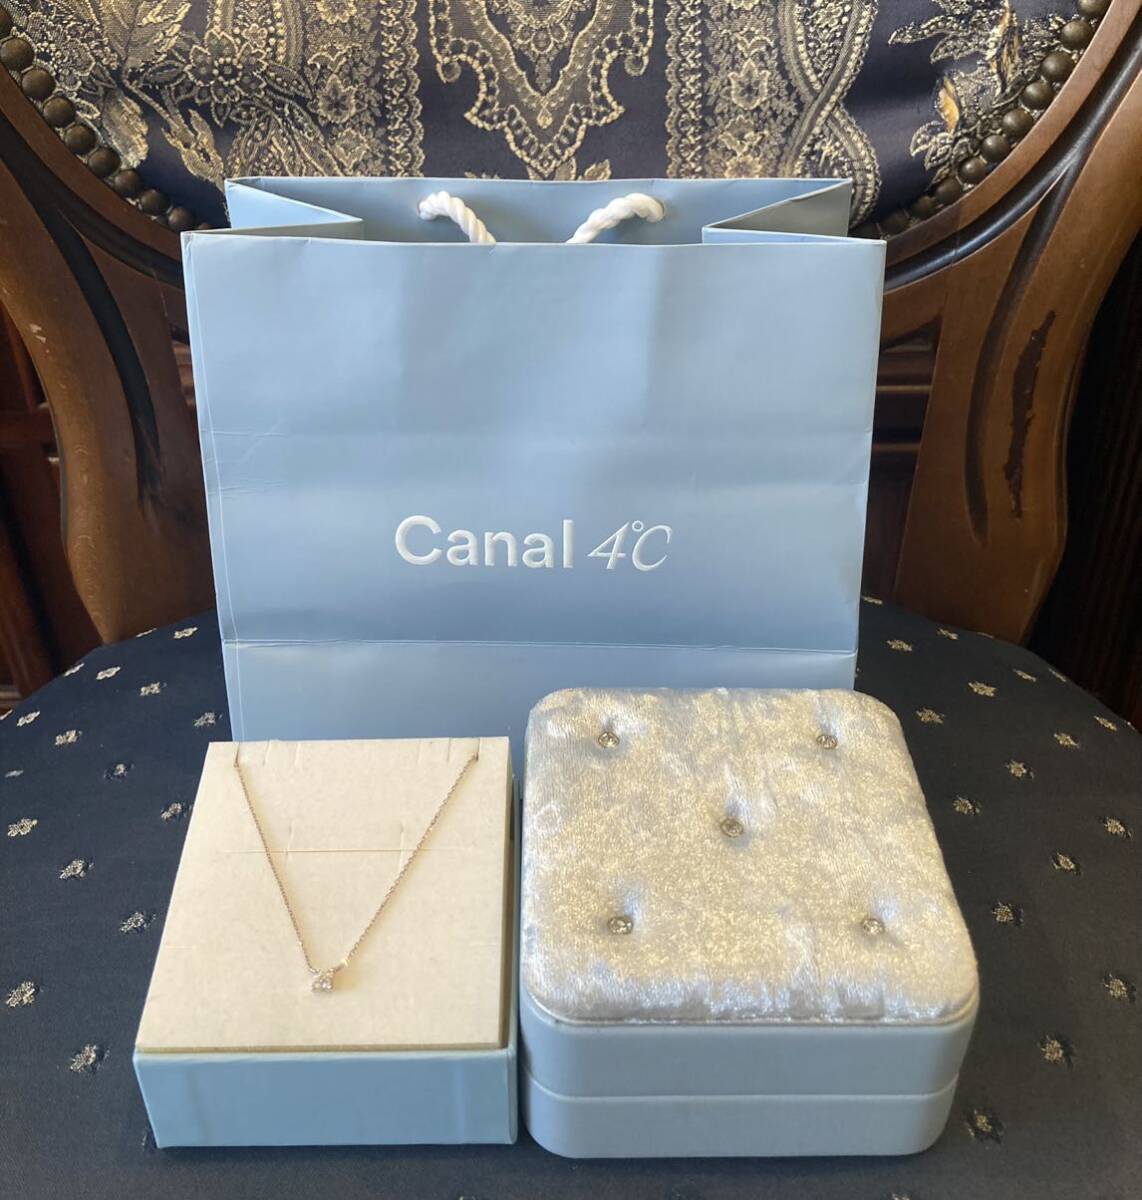 新品 正規品 canal4℃ ネックレス シルバー ネックレス ダイヤモンド 5粒 箱 紙袋 リボン カナルヨンドシー ◎プレゼント◎